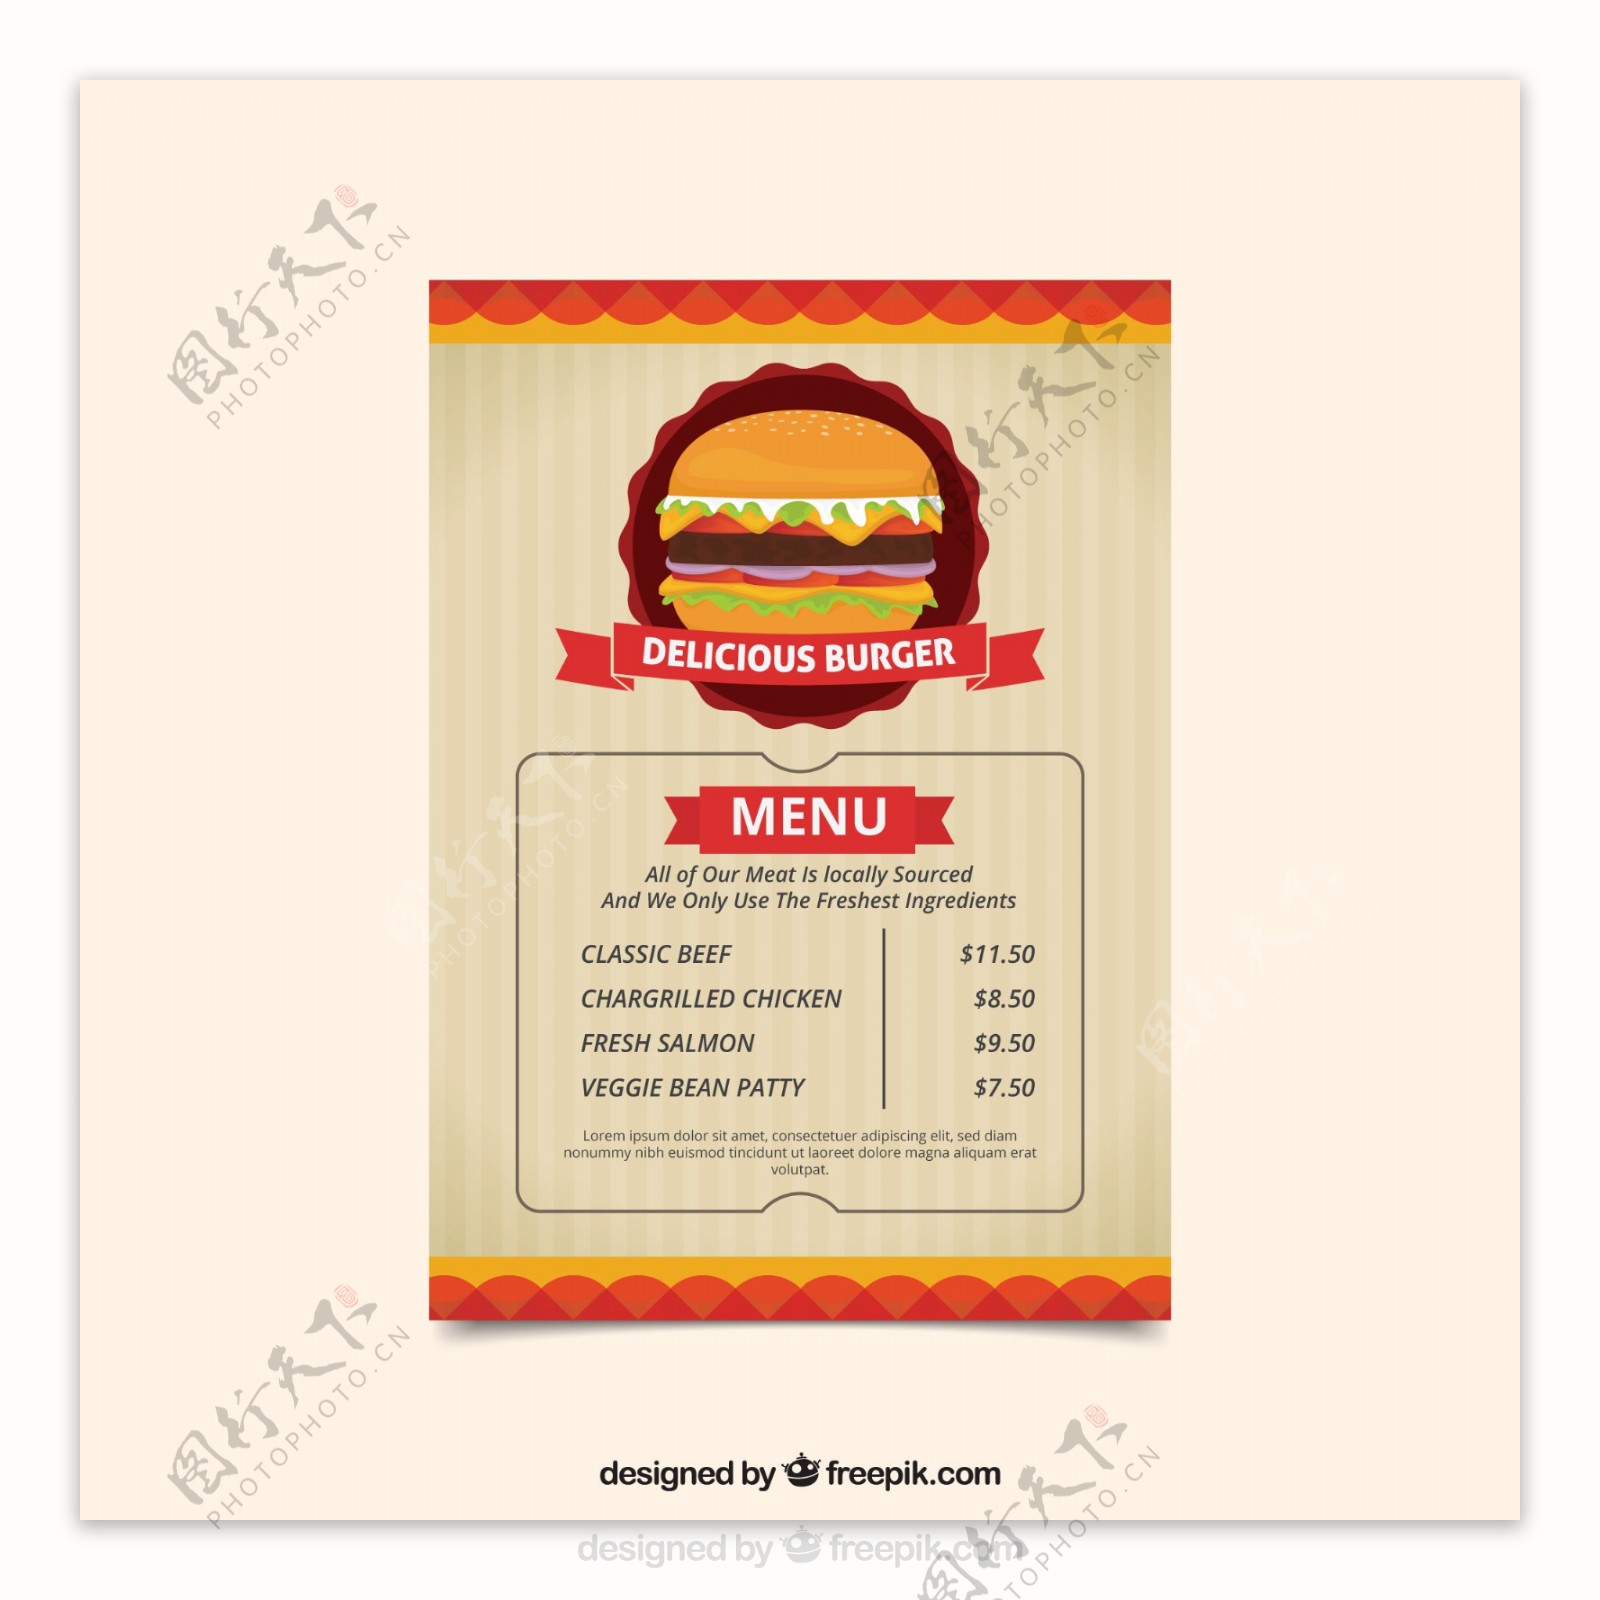 手绘复古风格汉堡插图菜单模板